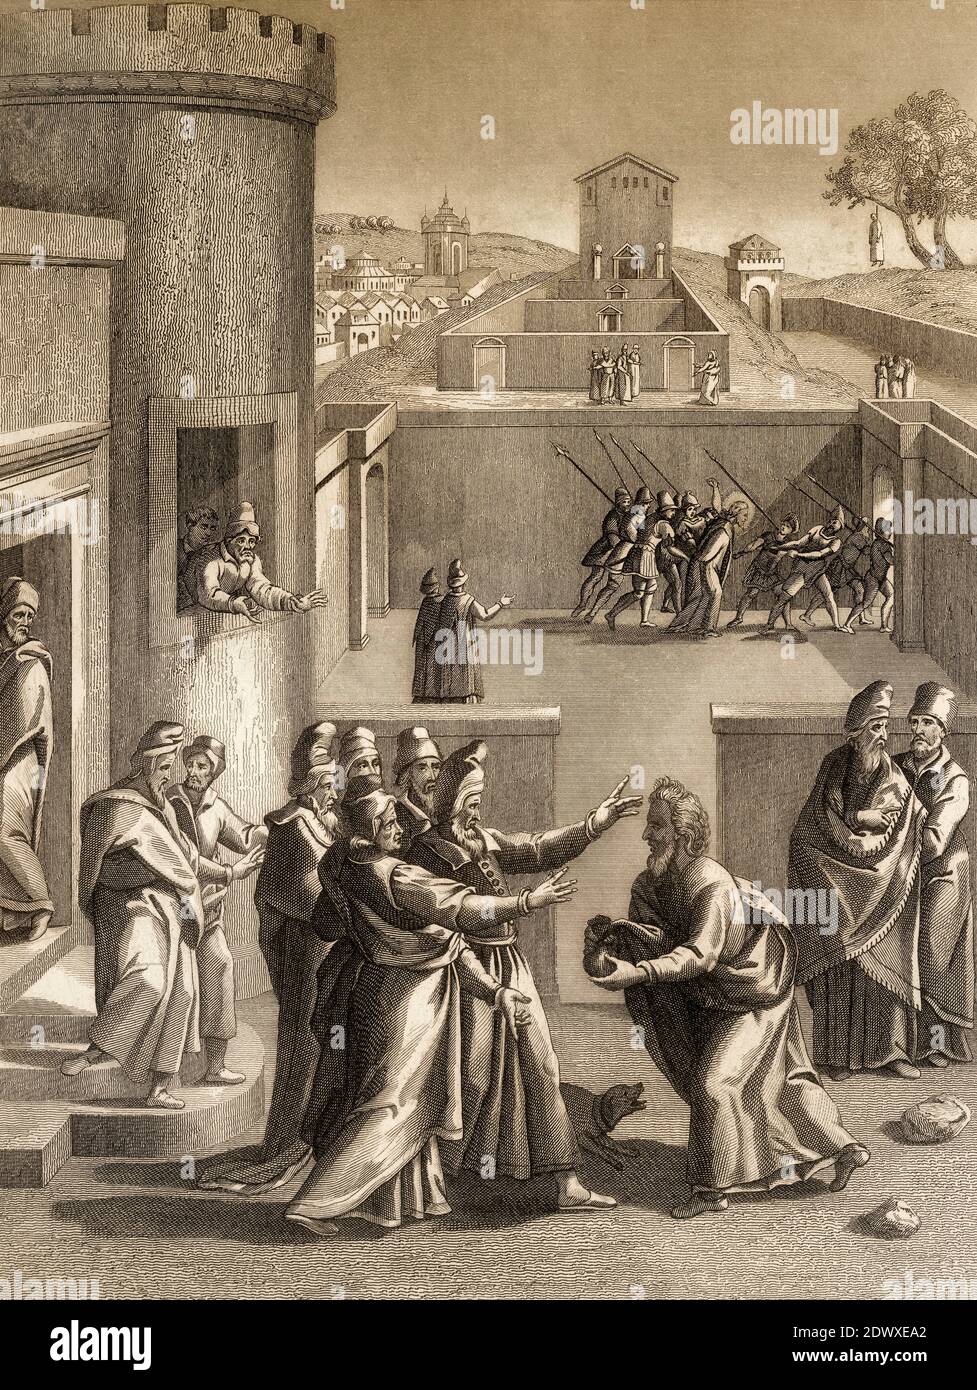 Judas Iscariot avant Ponce Pilate, Nouveau Testament, gravure en acier 1853, restauré numériquement Banque D'Images